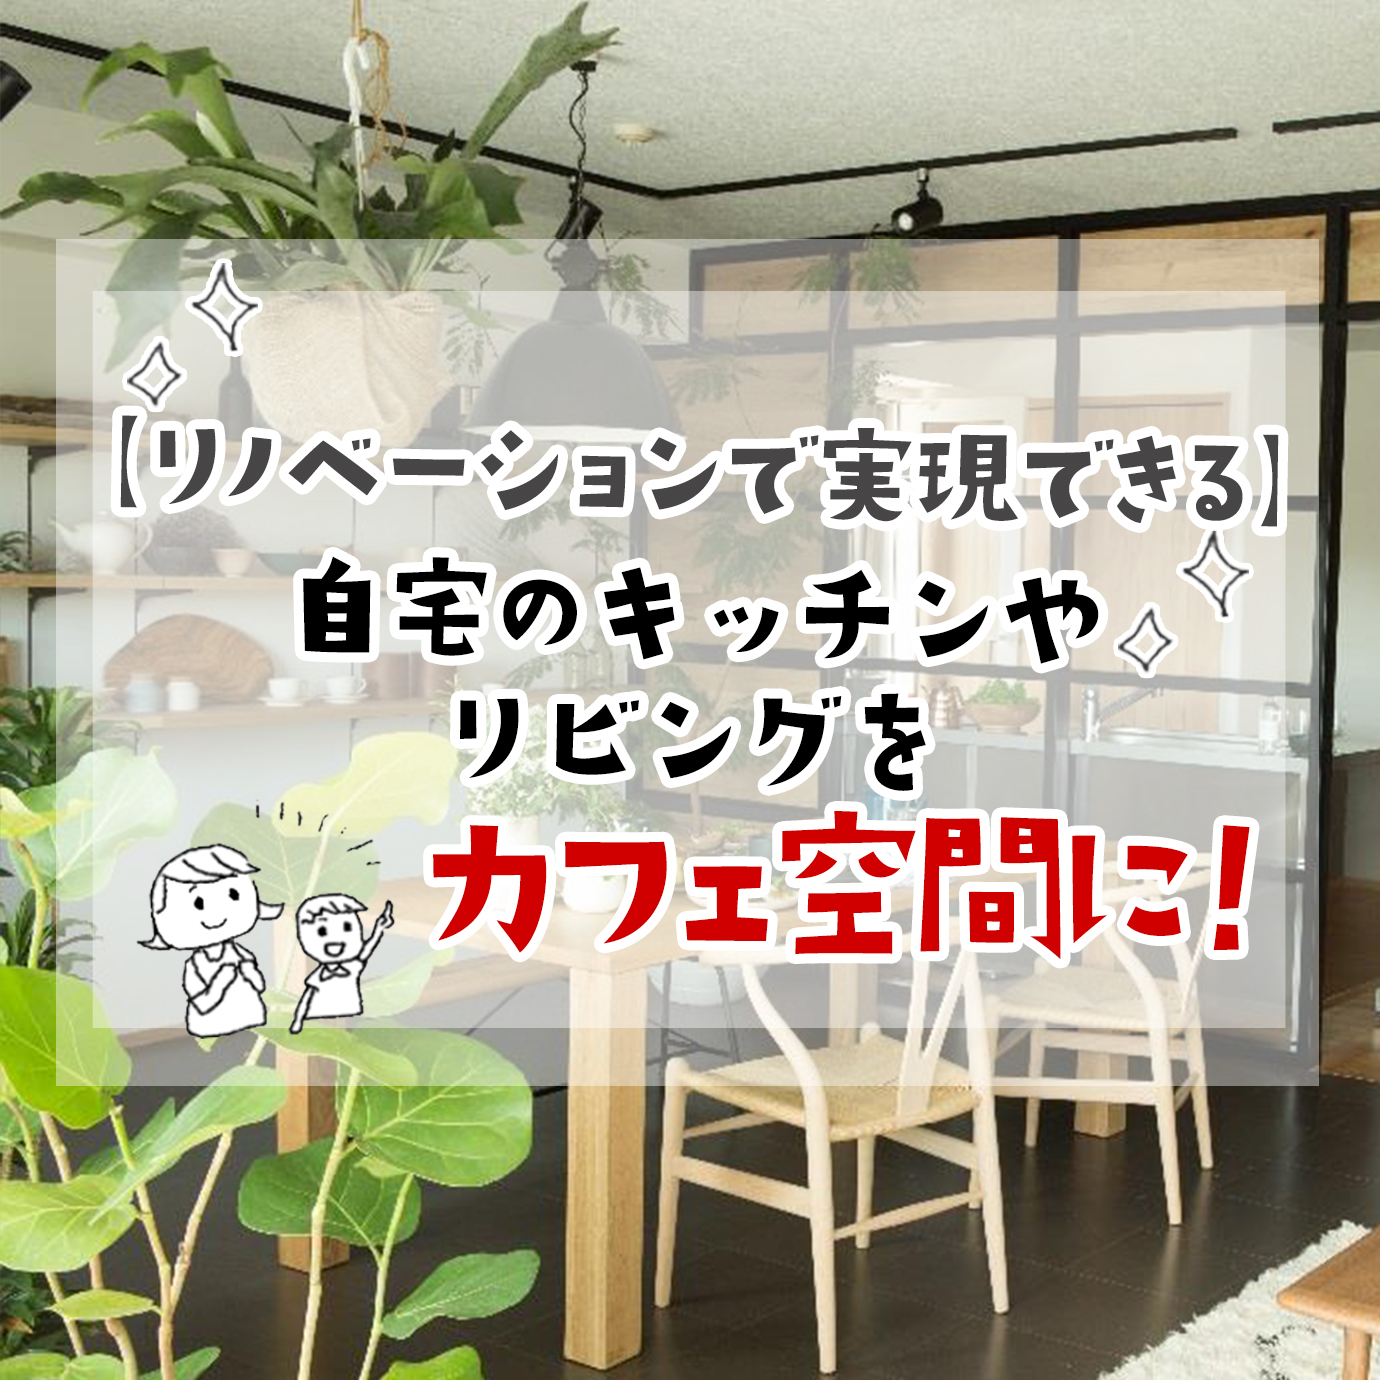 リノベーションで実現できる 自宅のキッチンやリビングをカフェ空間に スタッフブログ 名古屋リノベーションスタジオ 株式会社コリーナ